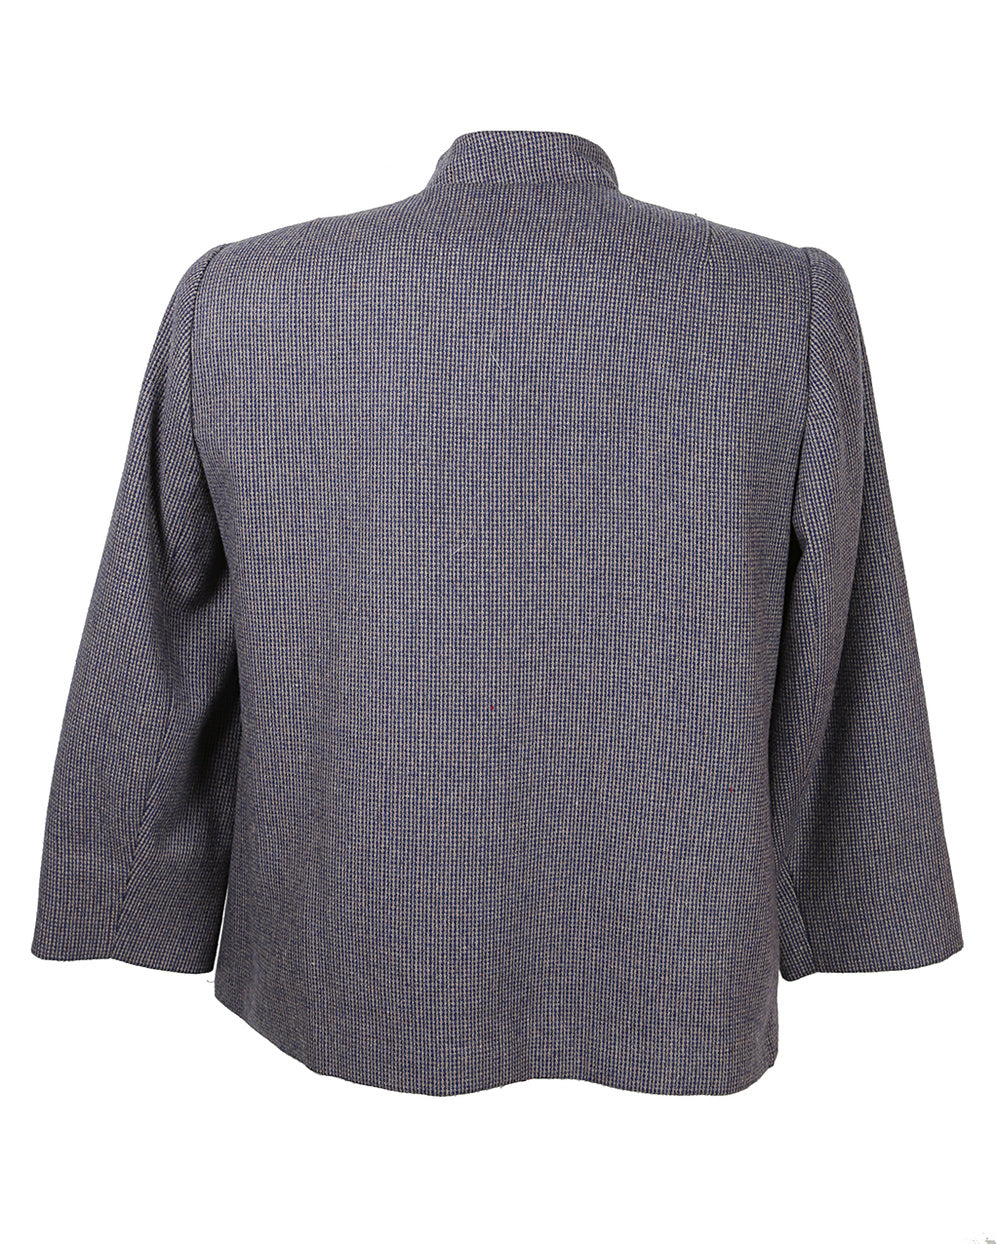 1980s Blue Knit Skirt Suit - M